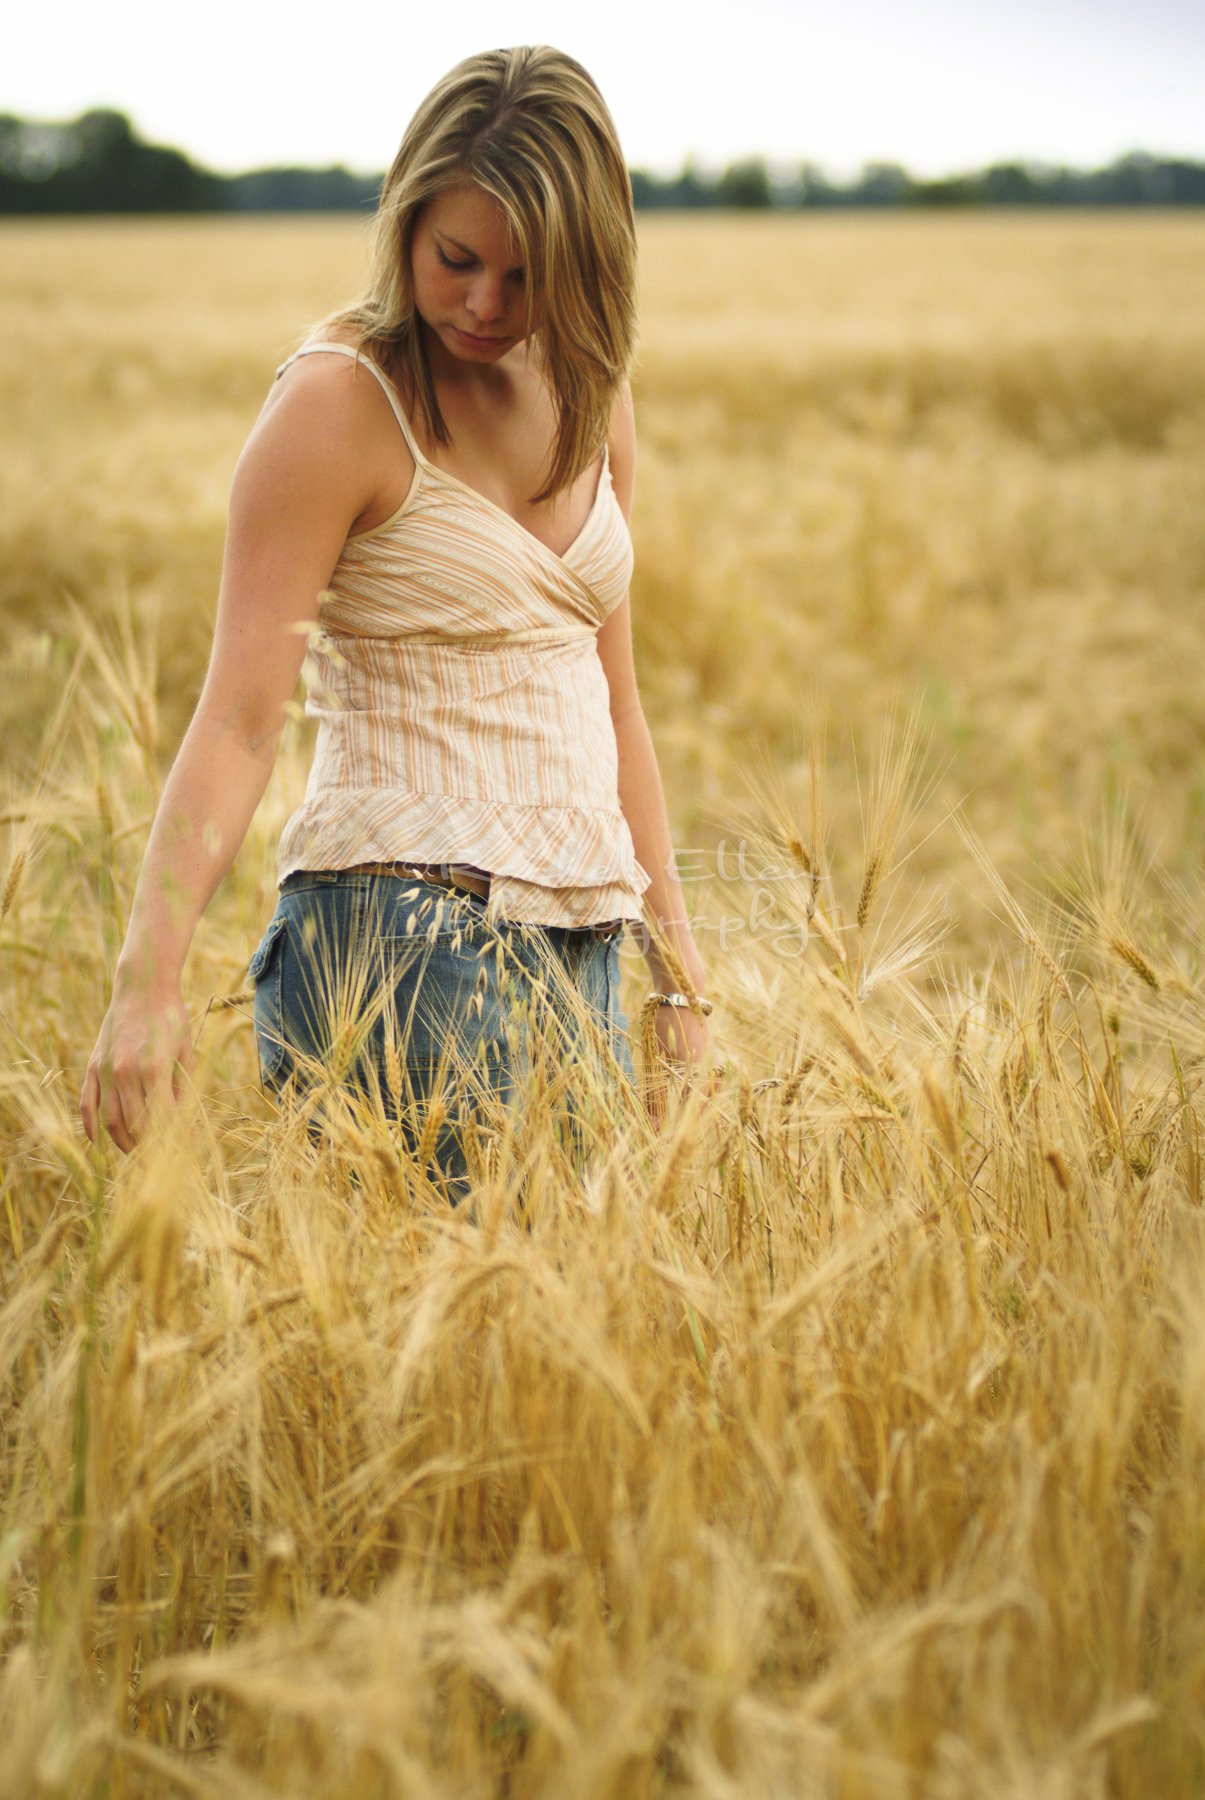 Teen Portrait in a Wheat Field